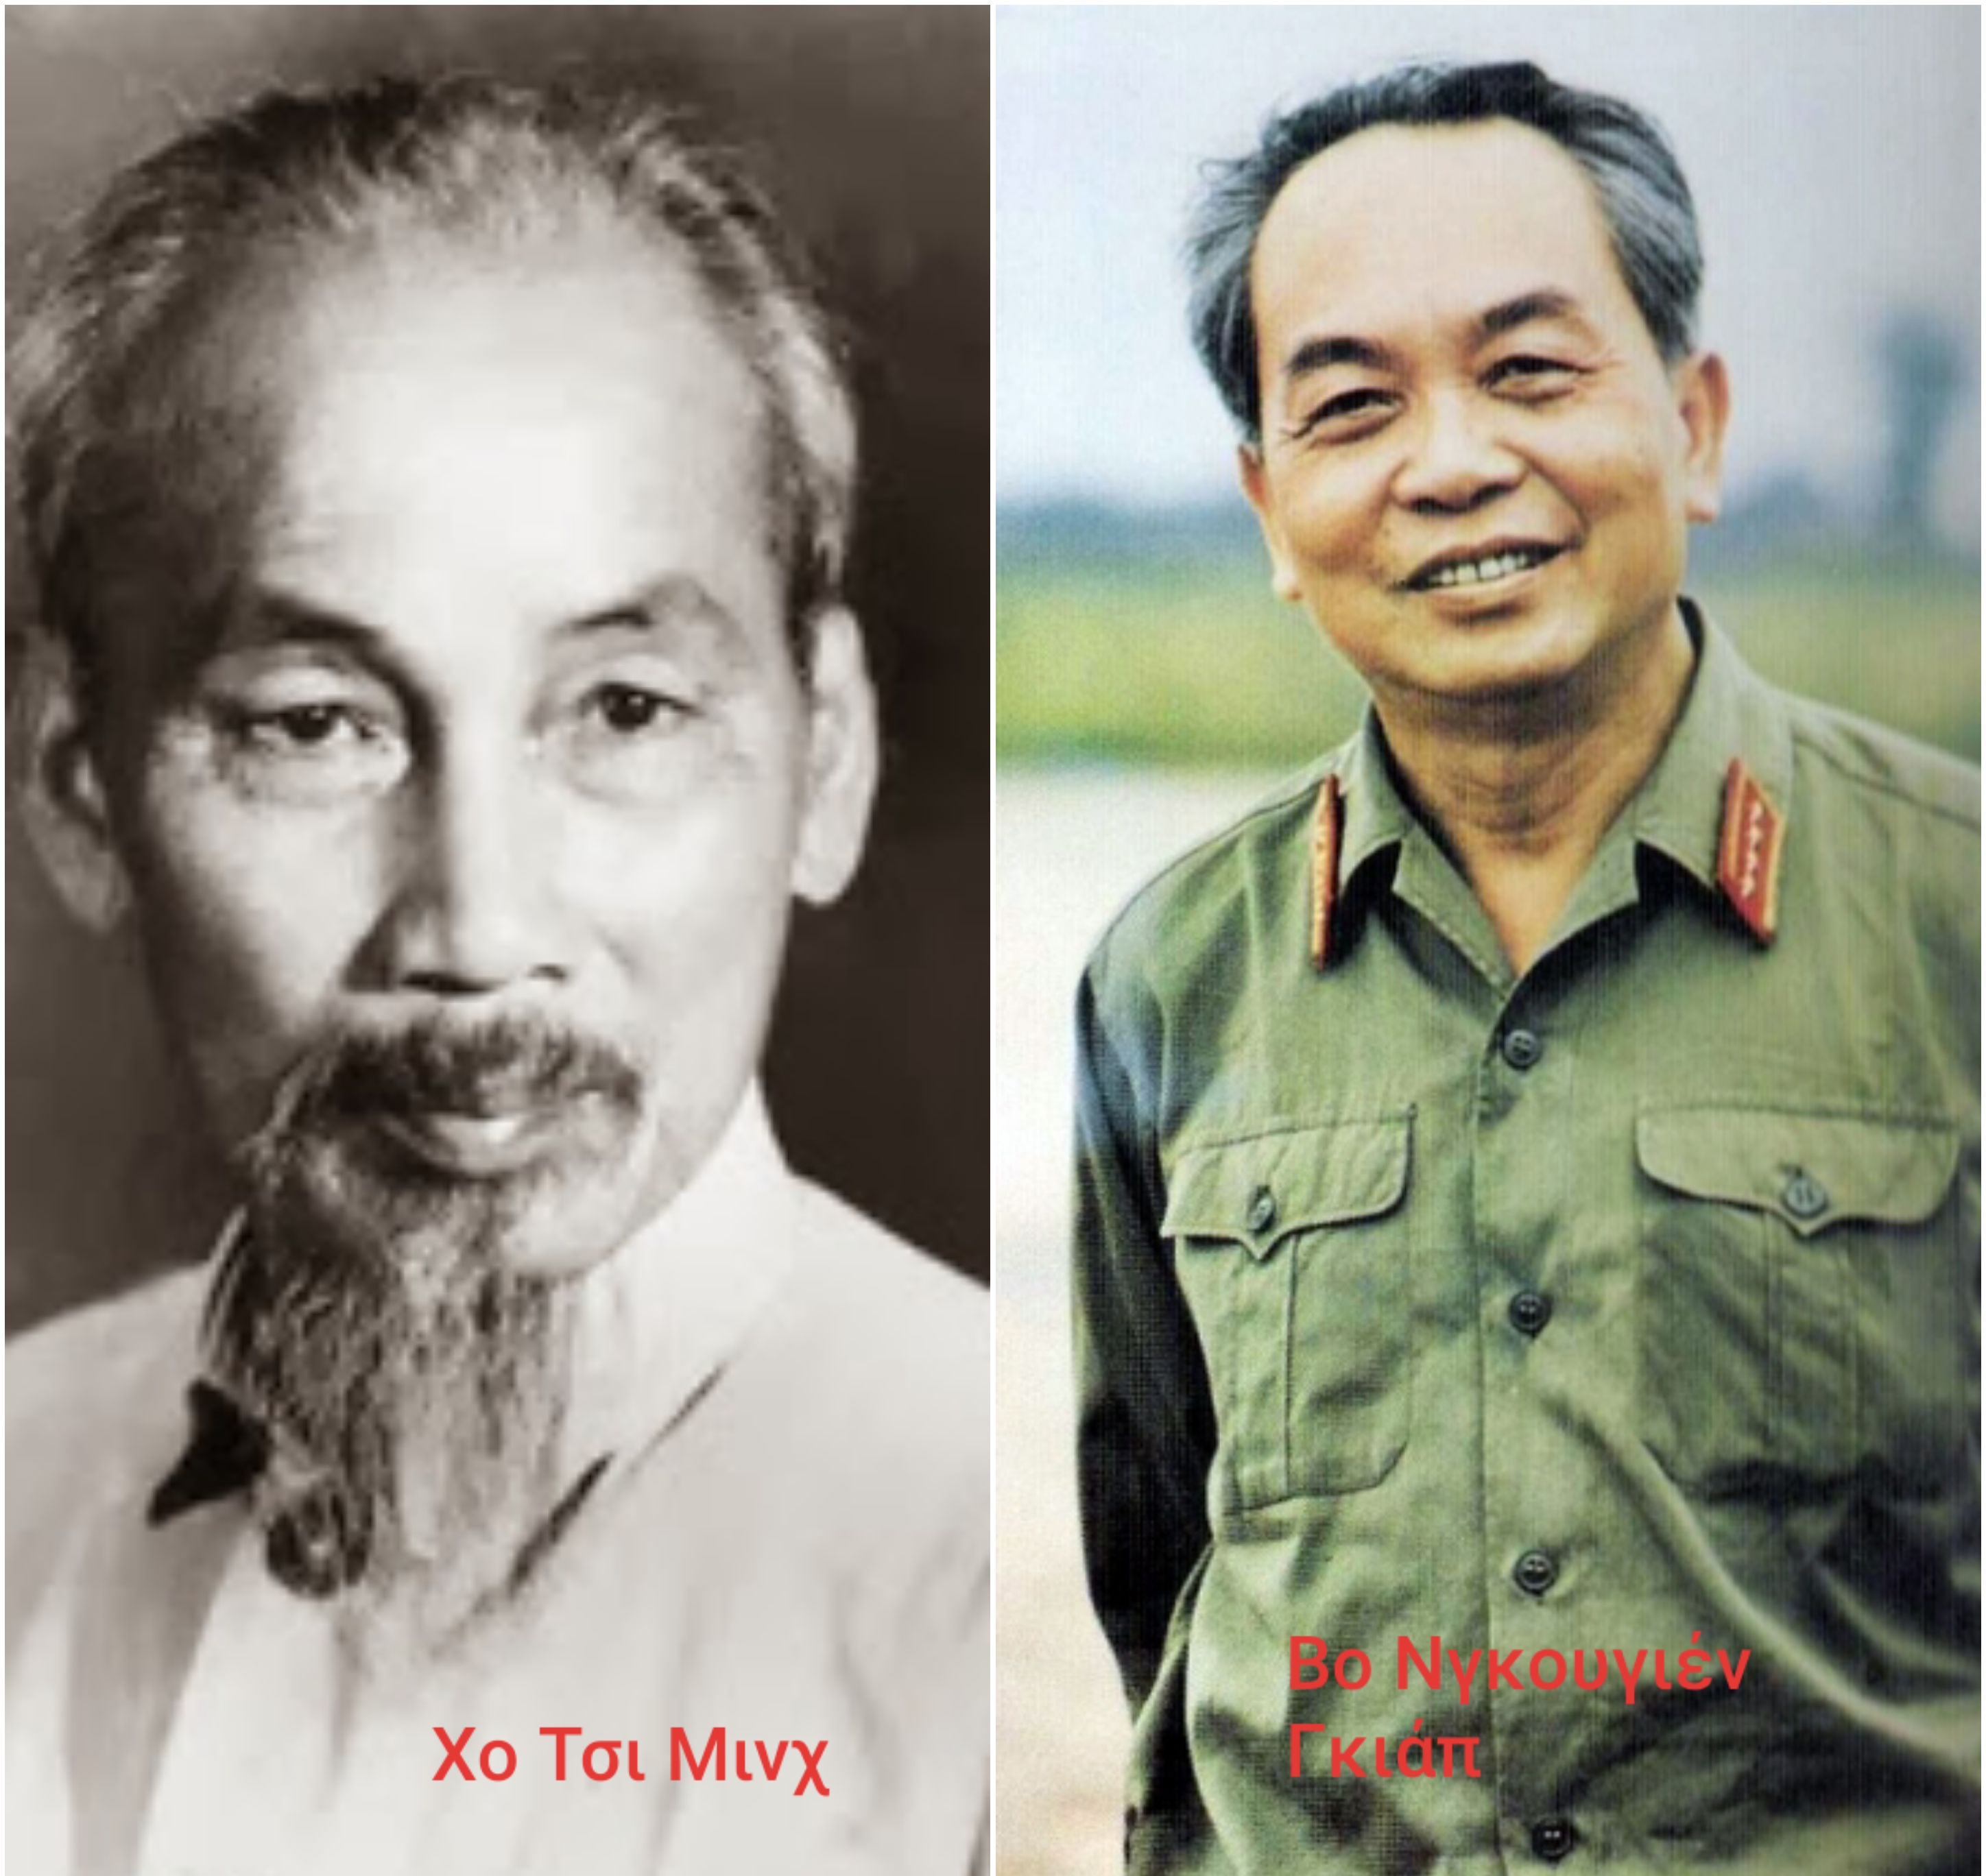 Ντιέν Μπιέν Φου, Χο Τσι Μινχ, Βο Νγκουγιέν Γκιάπ: θρυλικά ονόματα - επική μάχη!